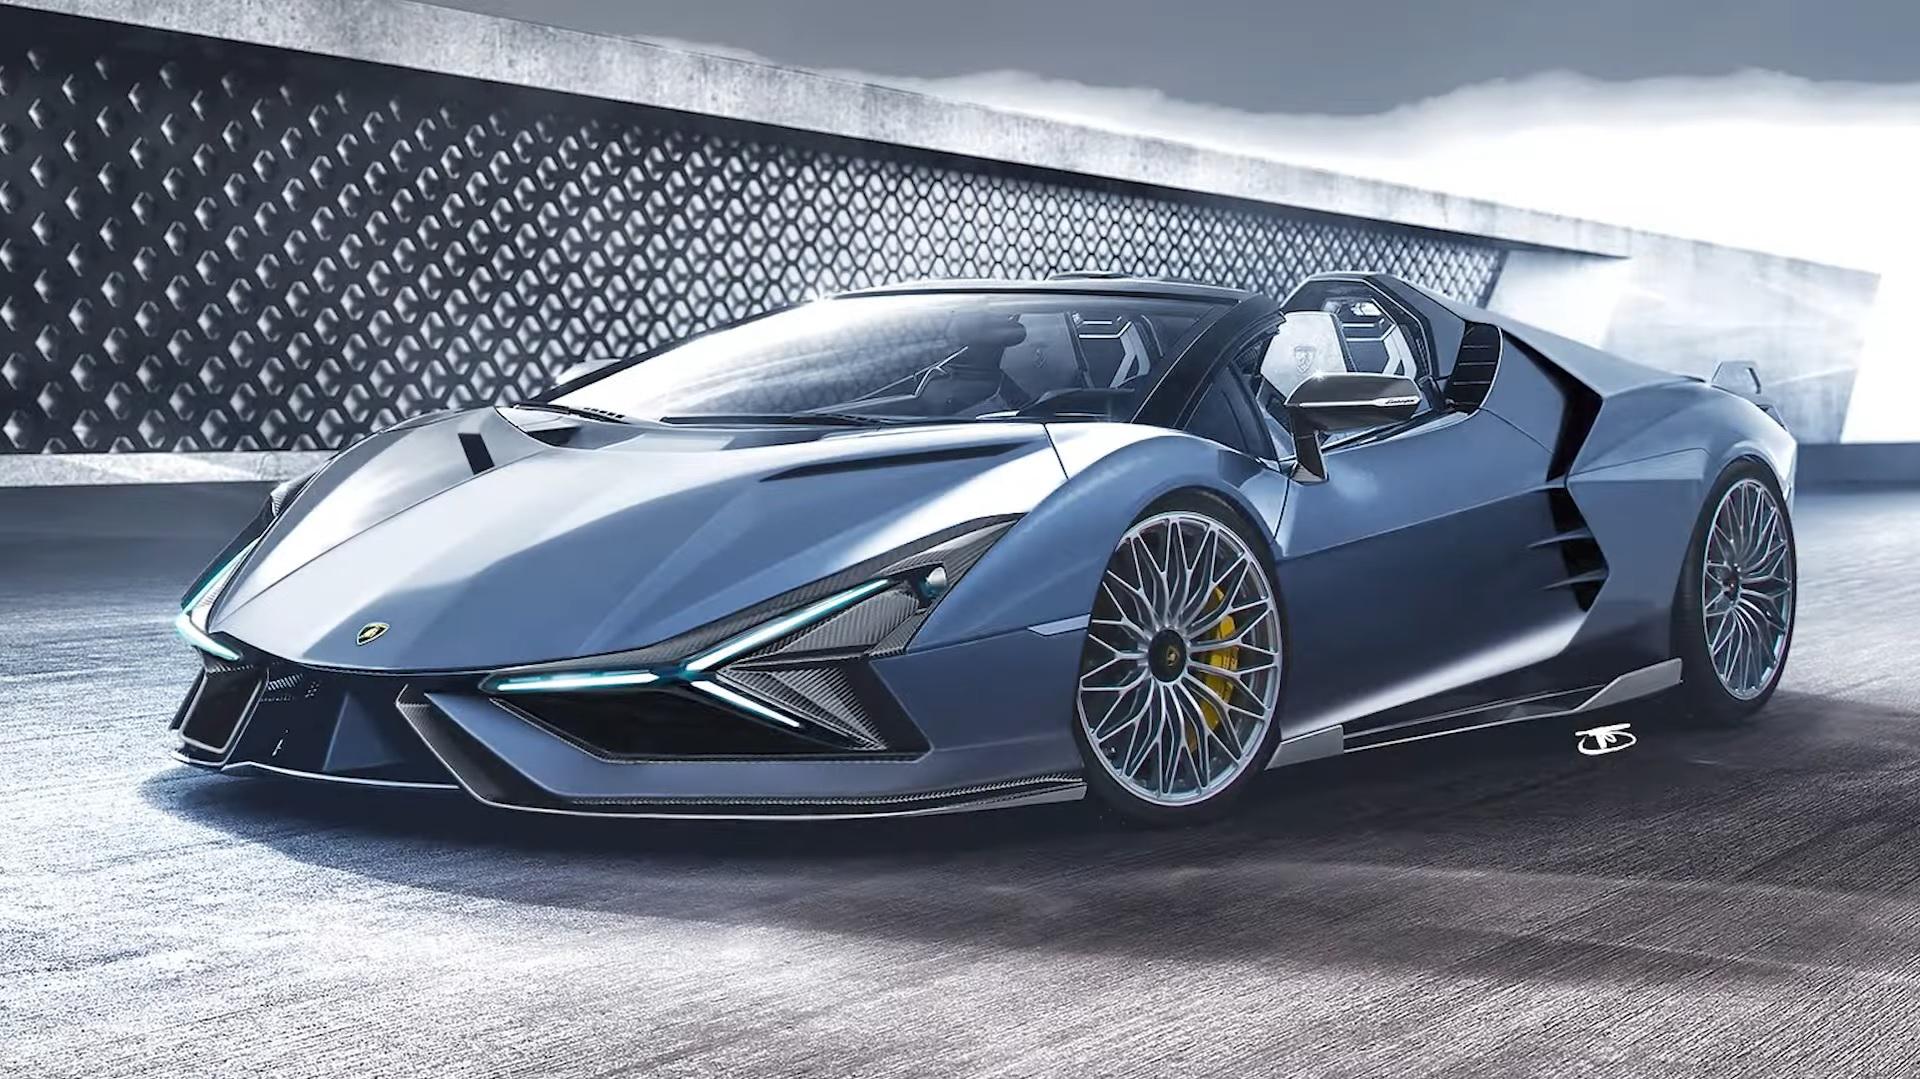 Lamborghini Aventador Successor Imagined With Sian Fkp